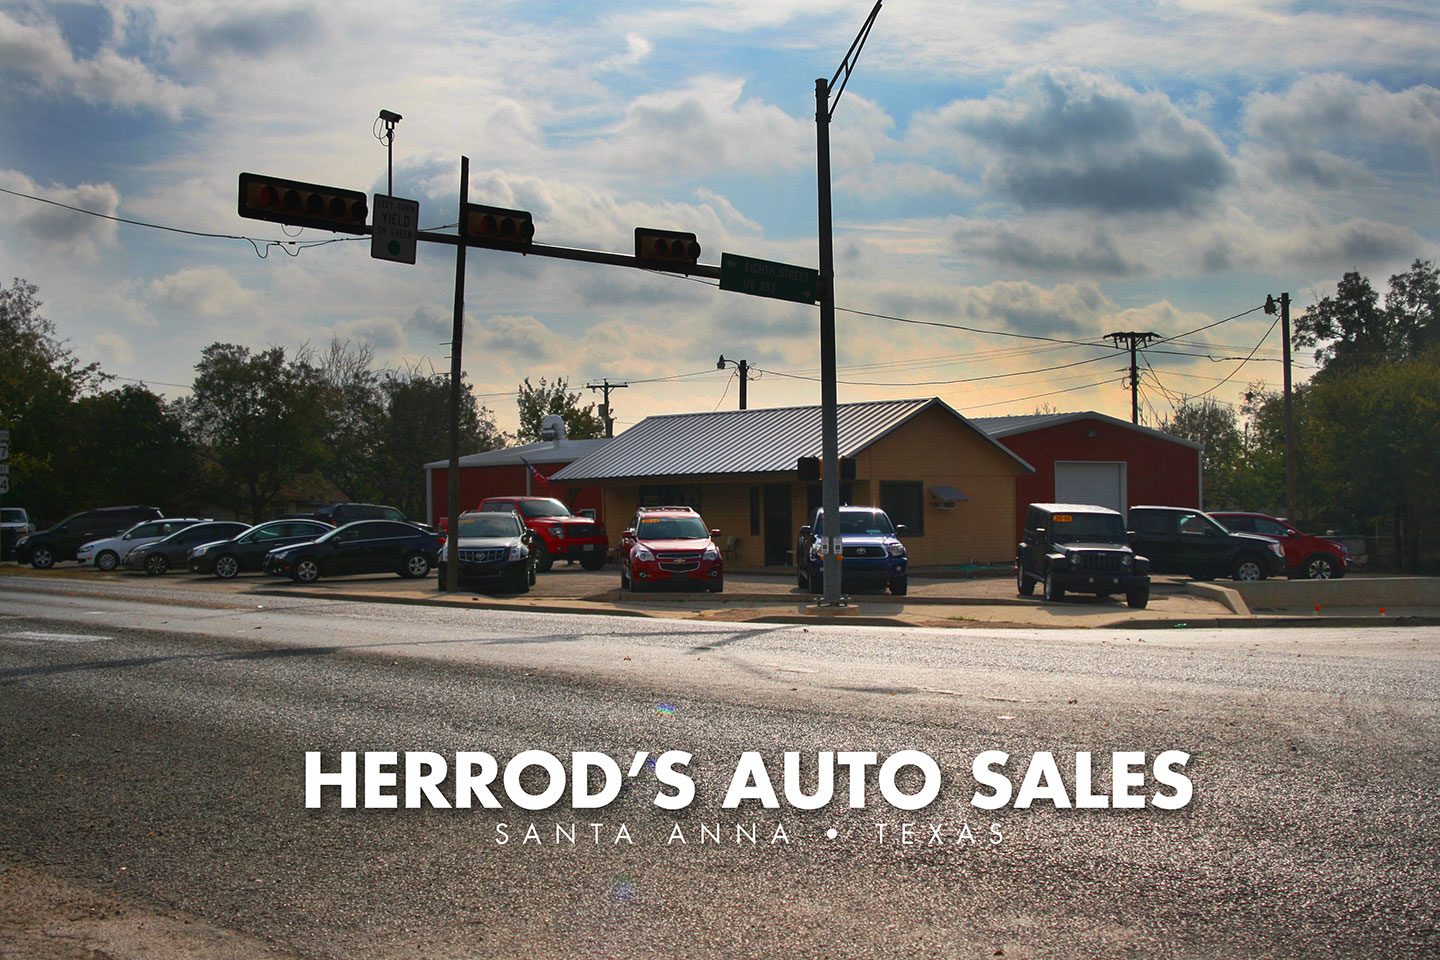 Herrod's Auto Sales